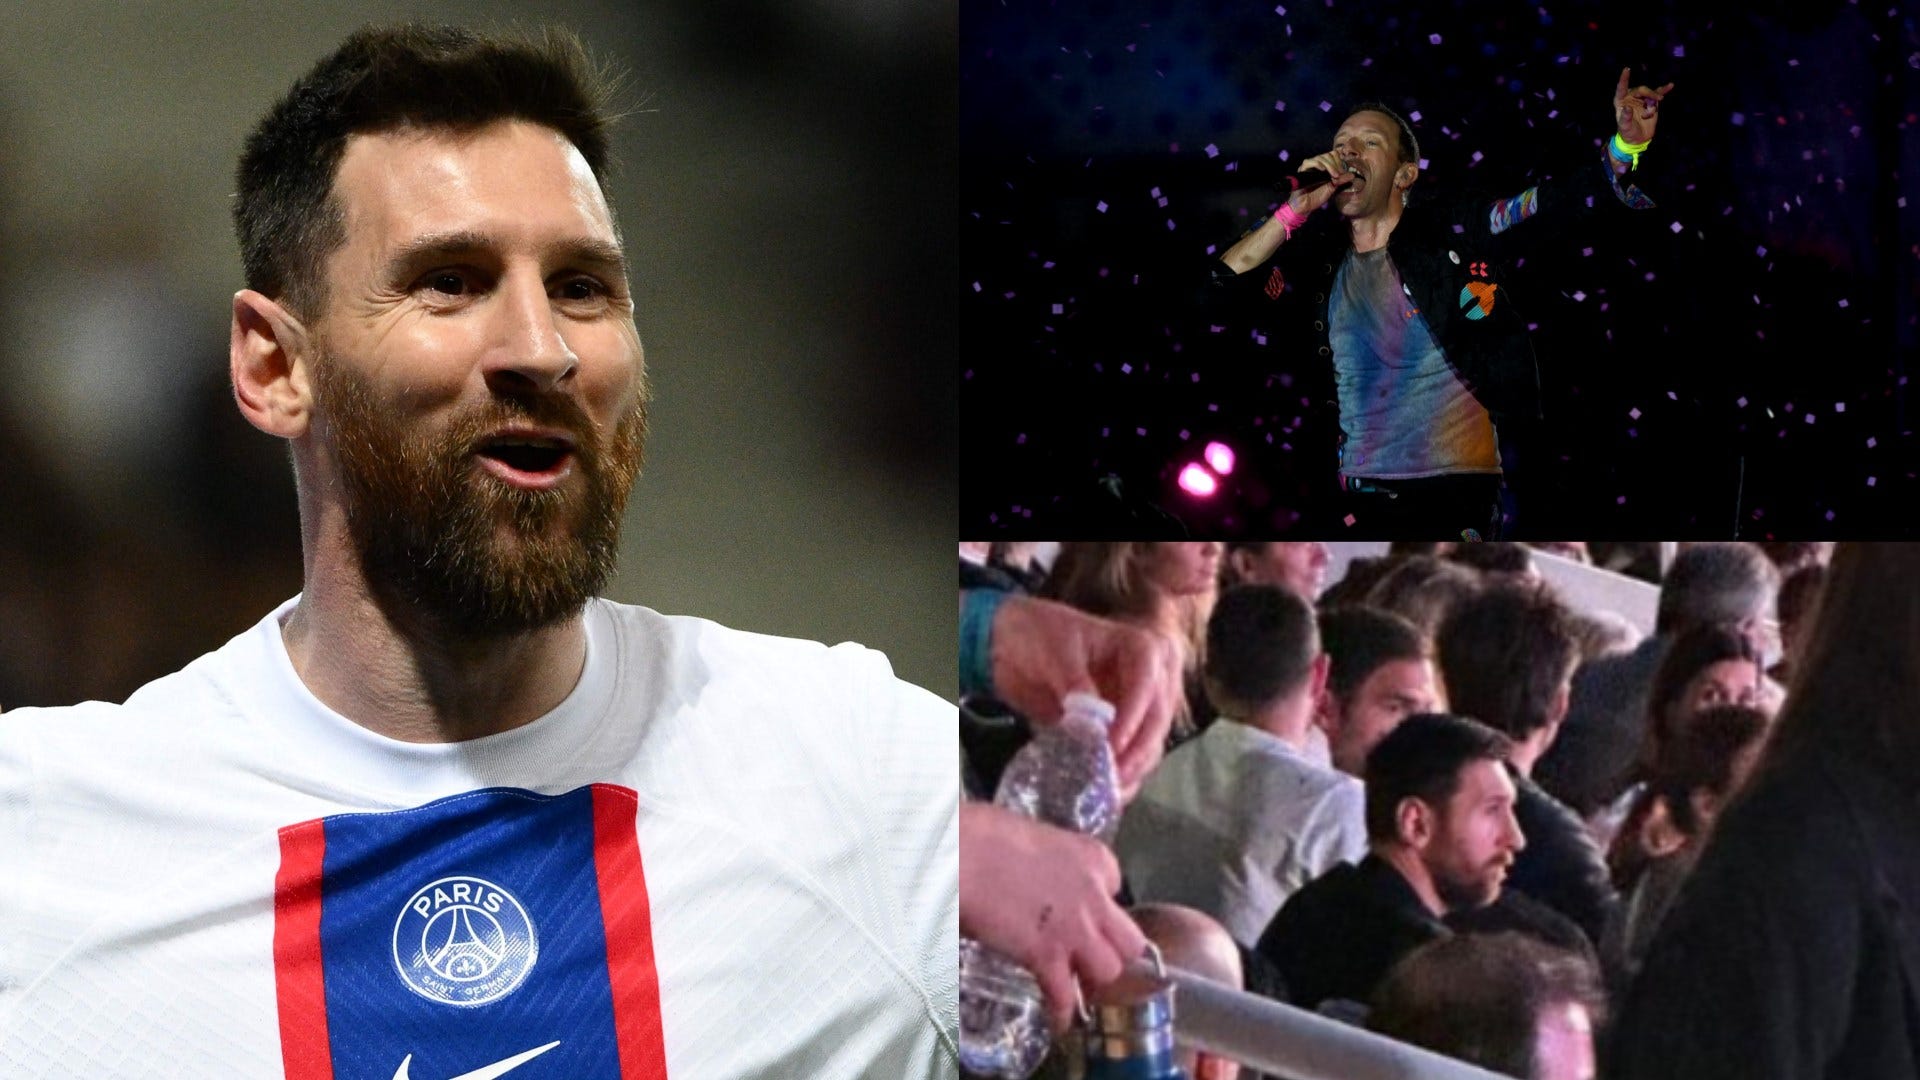 Vidéos |  Lionel Messi fait l’impasse sur la France pour fêter le stade provisoire de Barcelone !